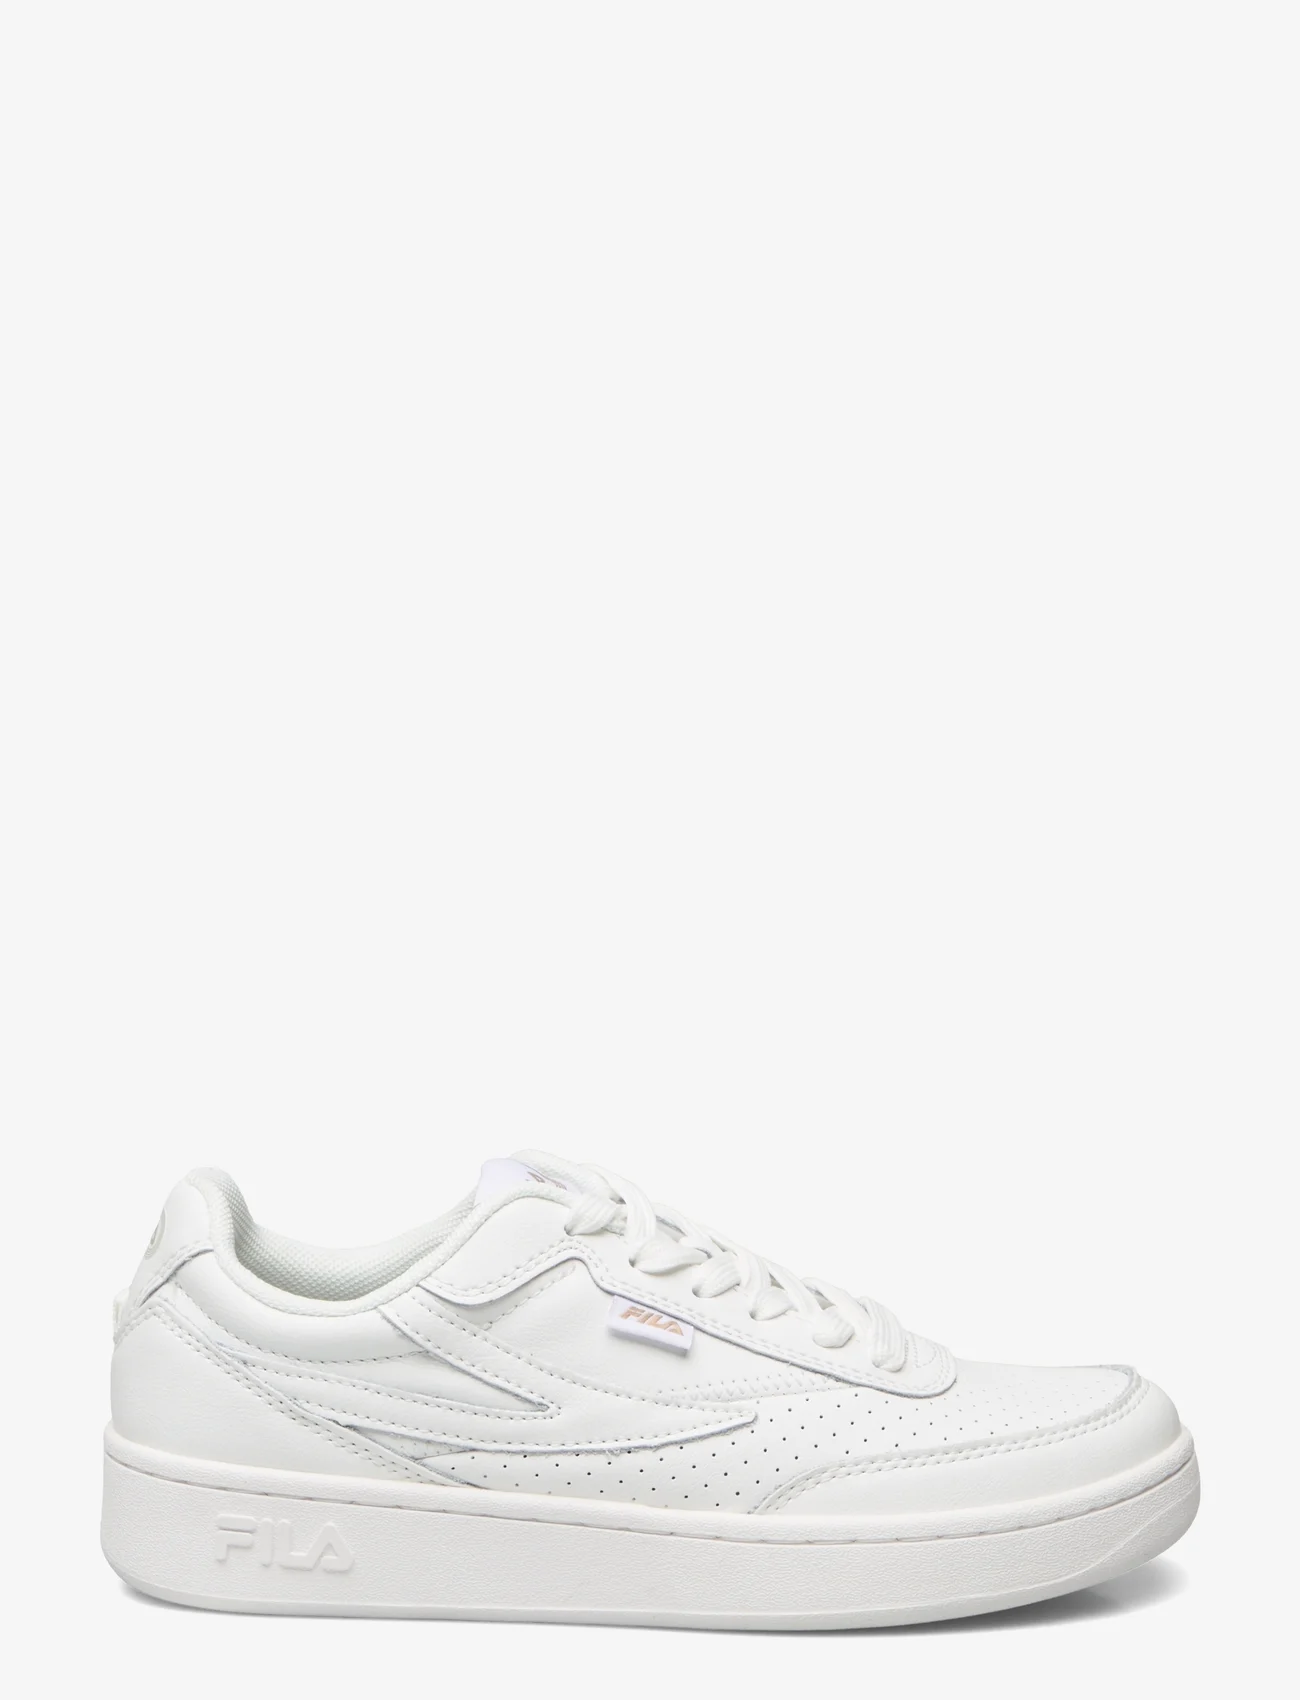 FILA - FILA SEVARO wmn - lave sneakers - white - 1